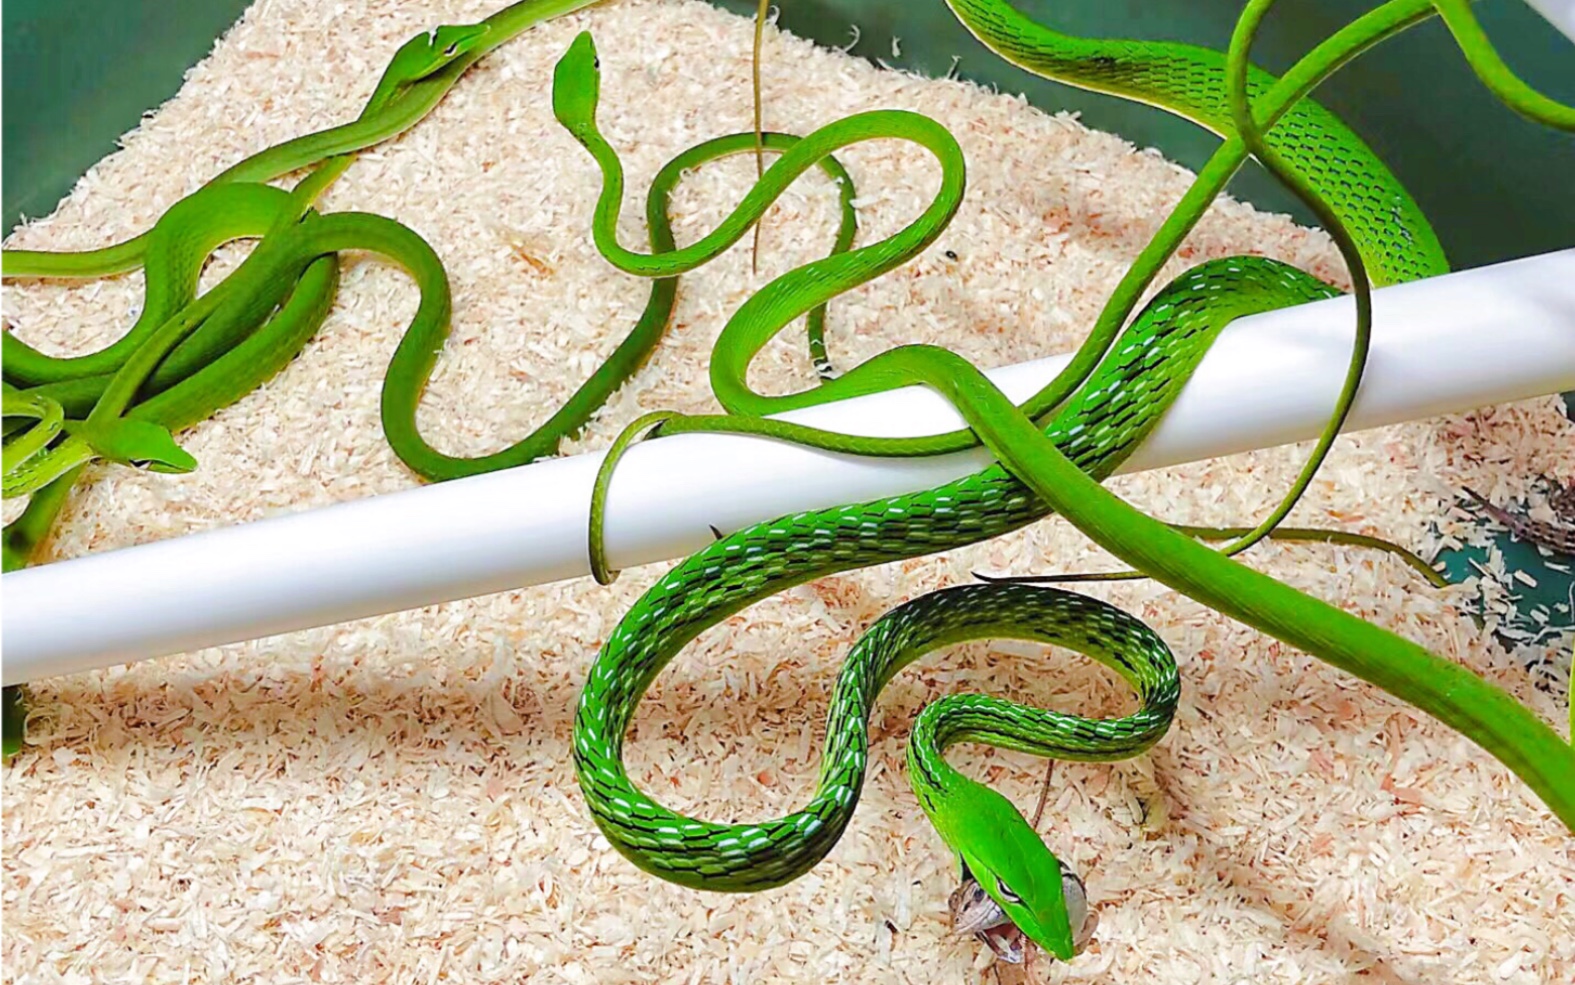 绿色的小蛇图片大全图片